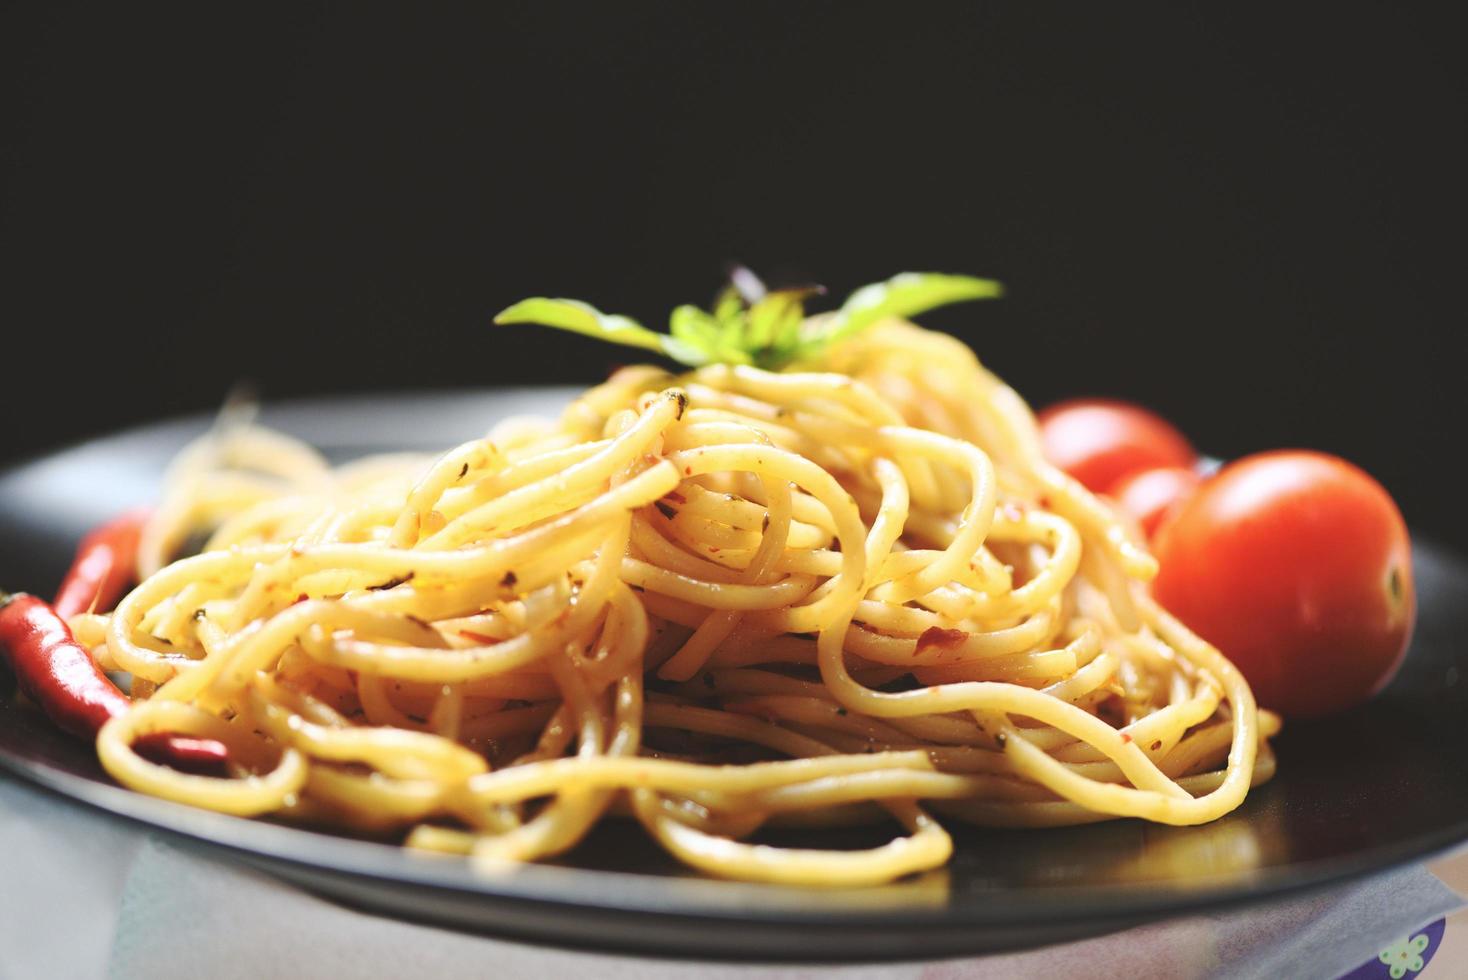 spaghetti pasta och tomat chili och basilika blad traditionell utsökt italiensk mat spaghetti bolognese på tallrik på matbordet med svart foto